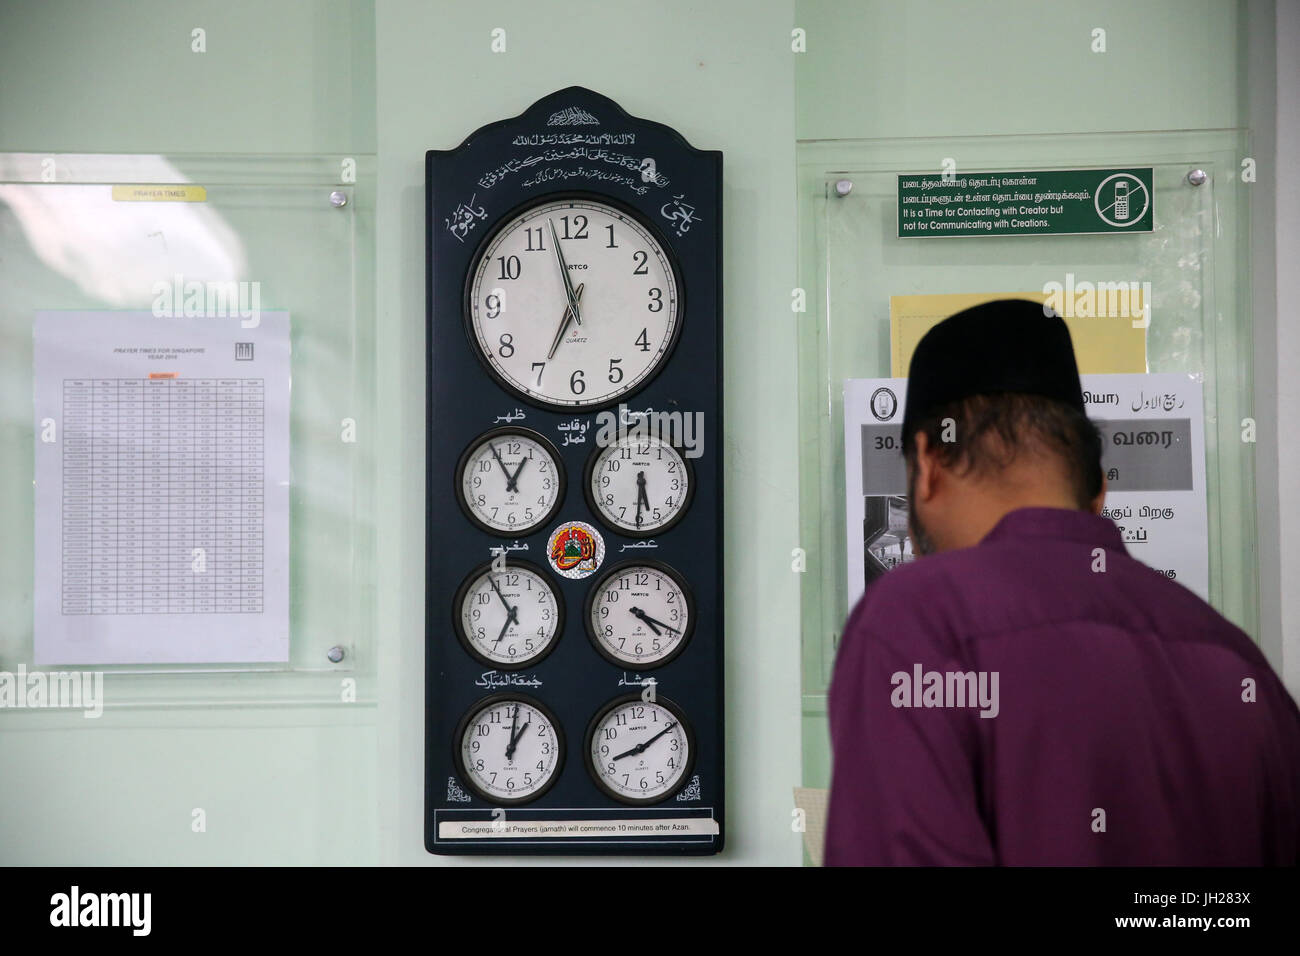 Masjid Jamae befindet sich eine der ältesten Moscheen in Singapur in Chinatown.  Uhren zeigen der Zeit alle Gebete Muslime. Salat. Singapur. Stockfoto